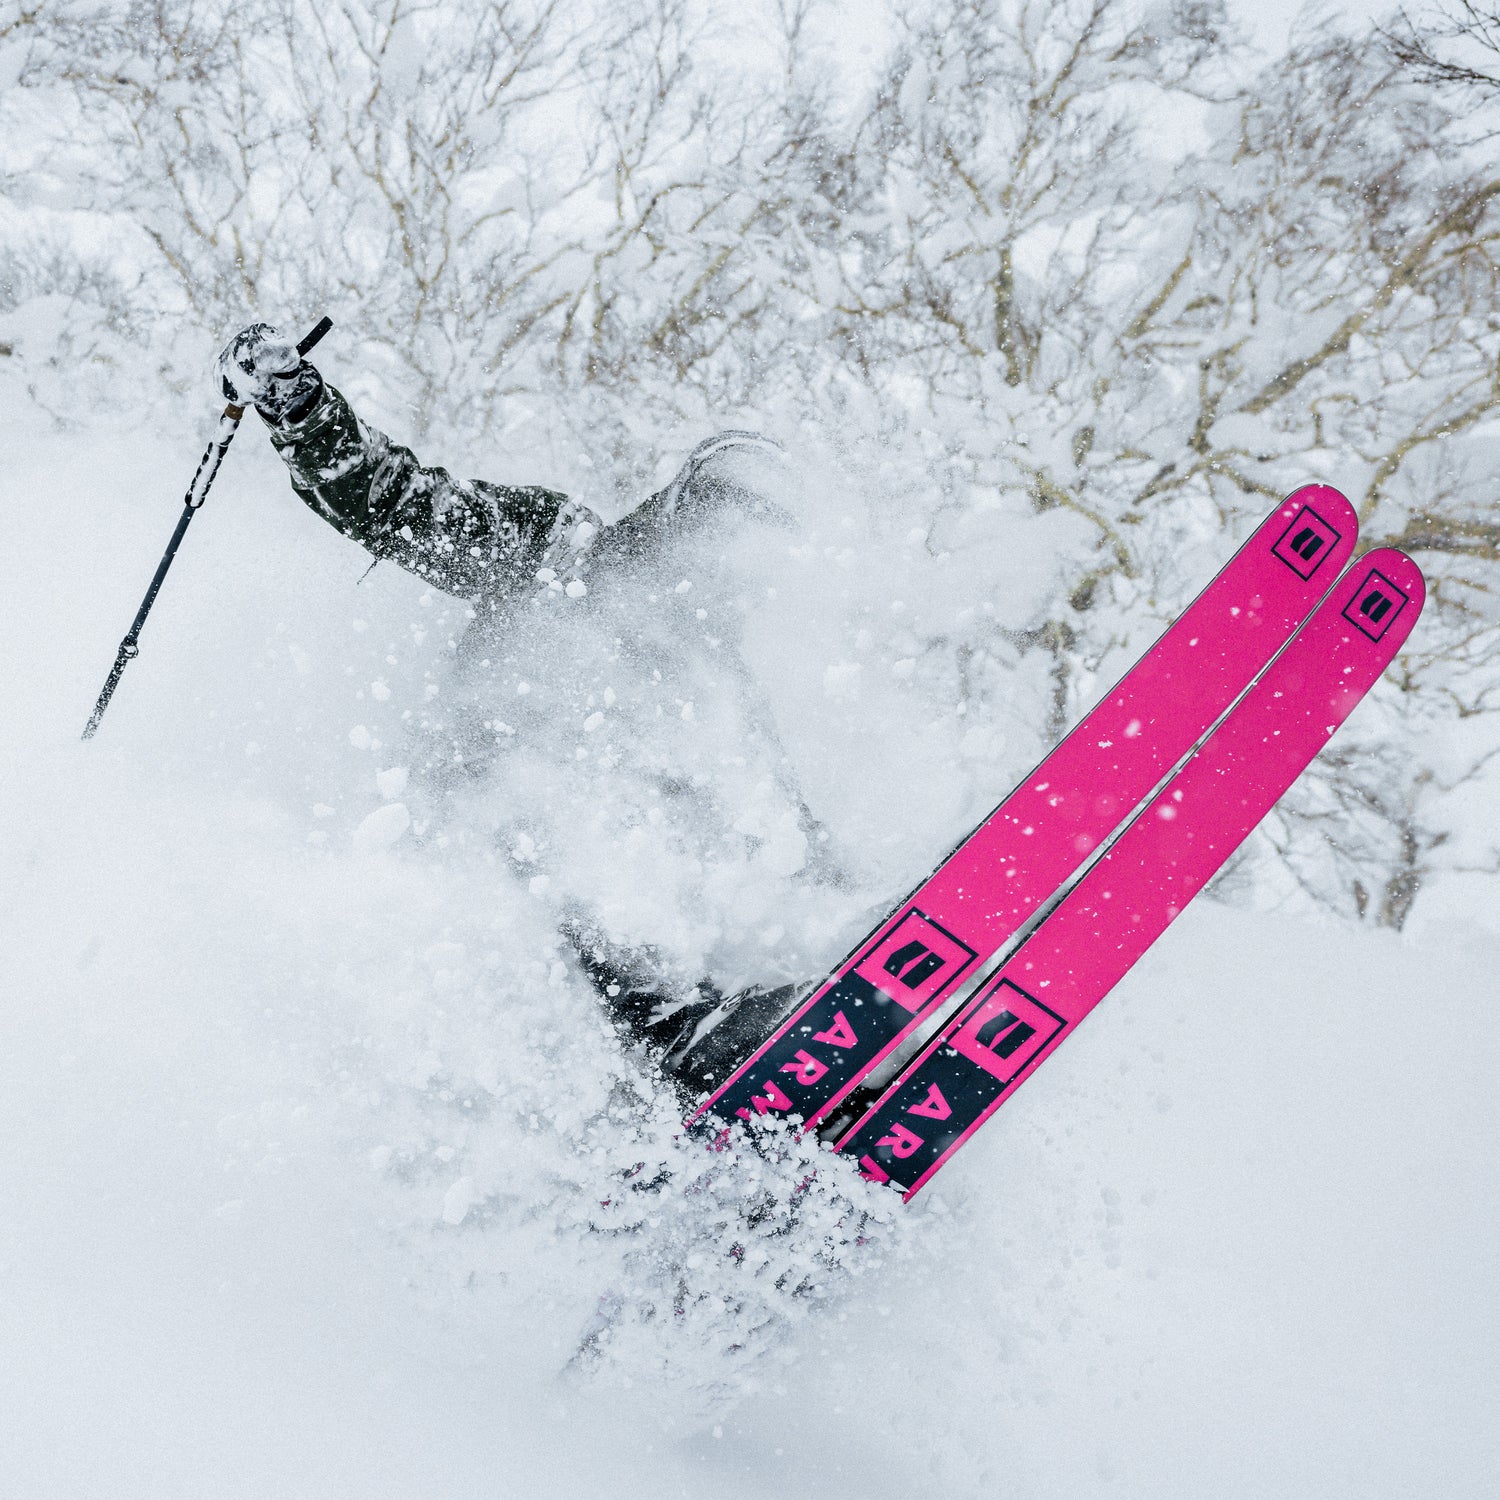 CRAFT Gants de ski de fond Pro Insulate Race pour homme